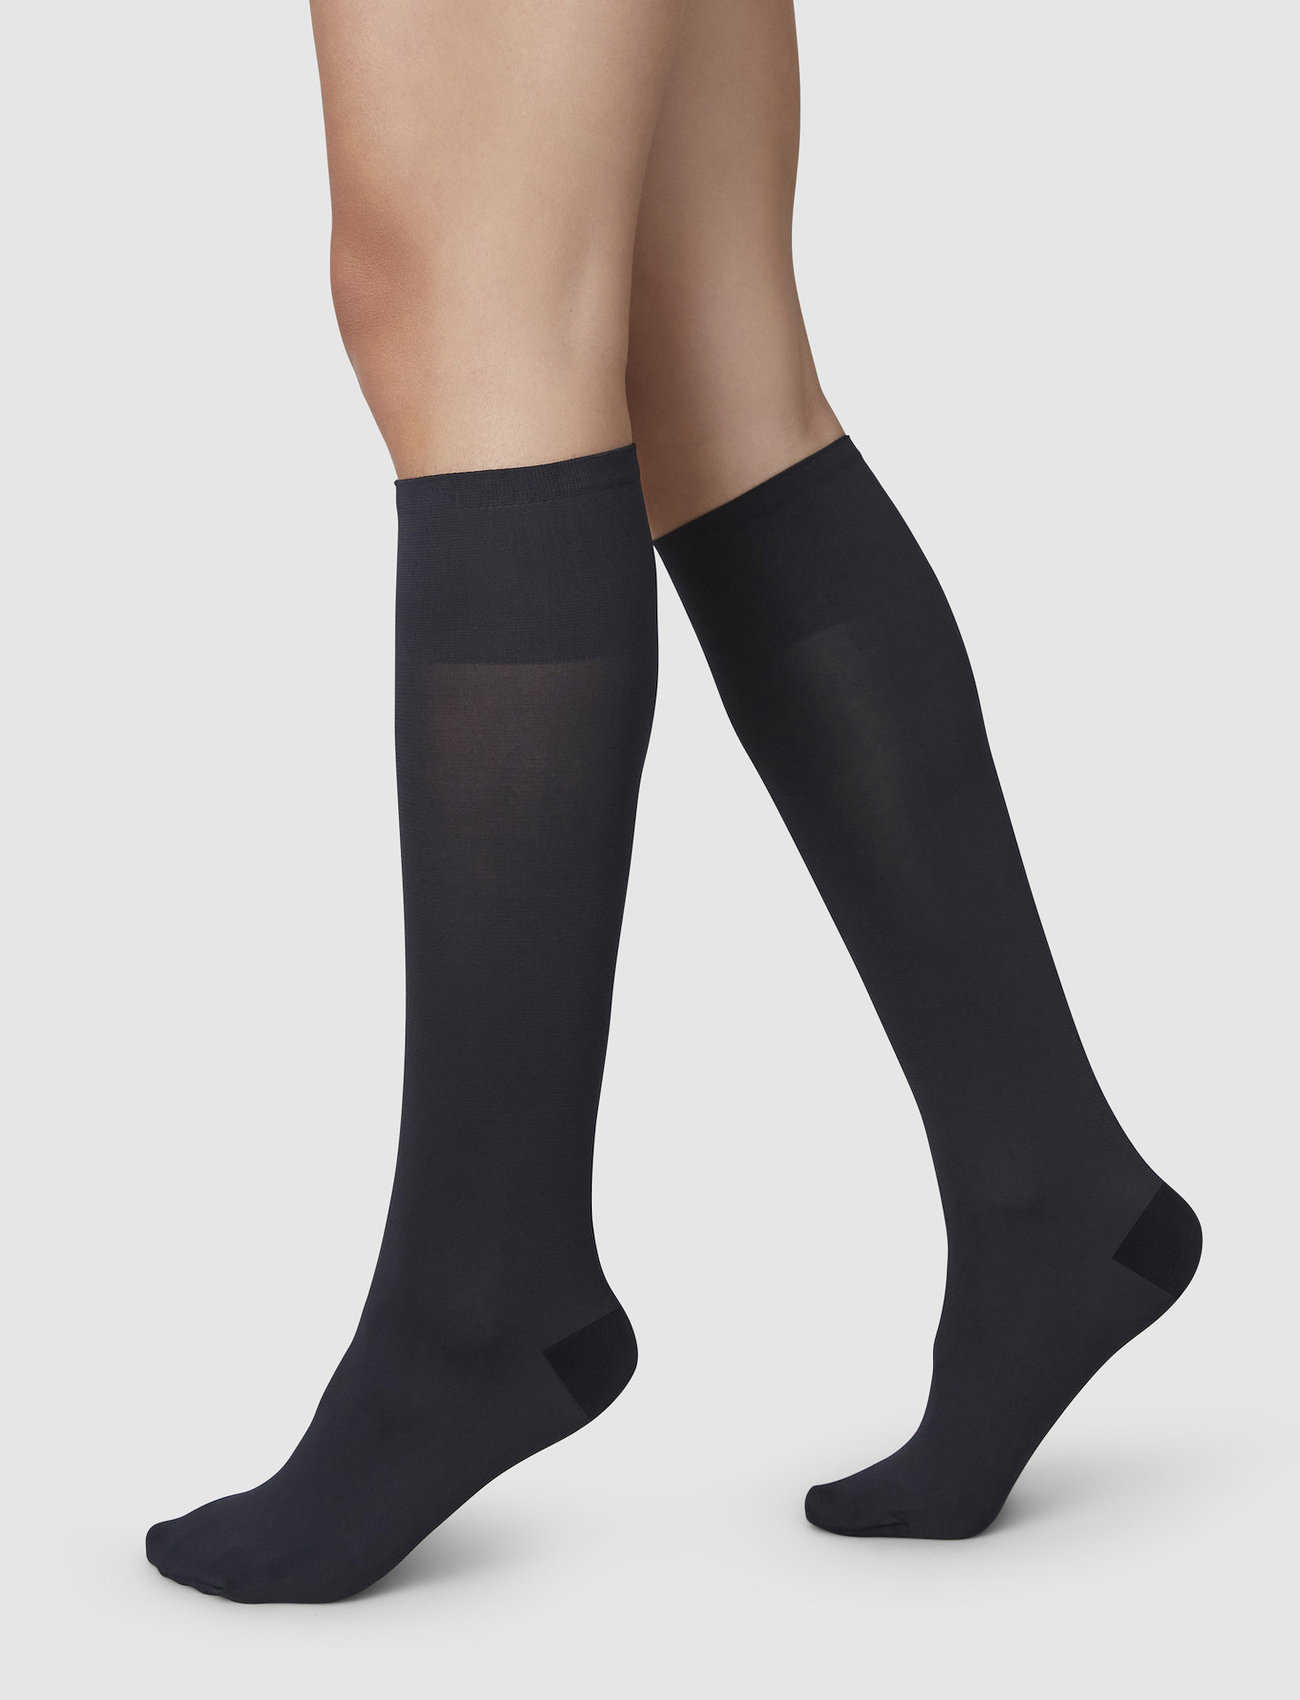 Swedish Stockings - Irma Support knee-high 60D - knæstrømper - black - 0